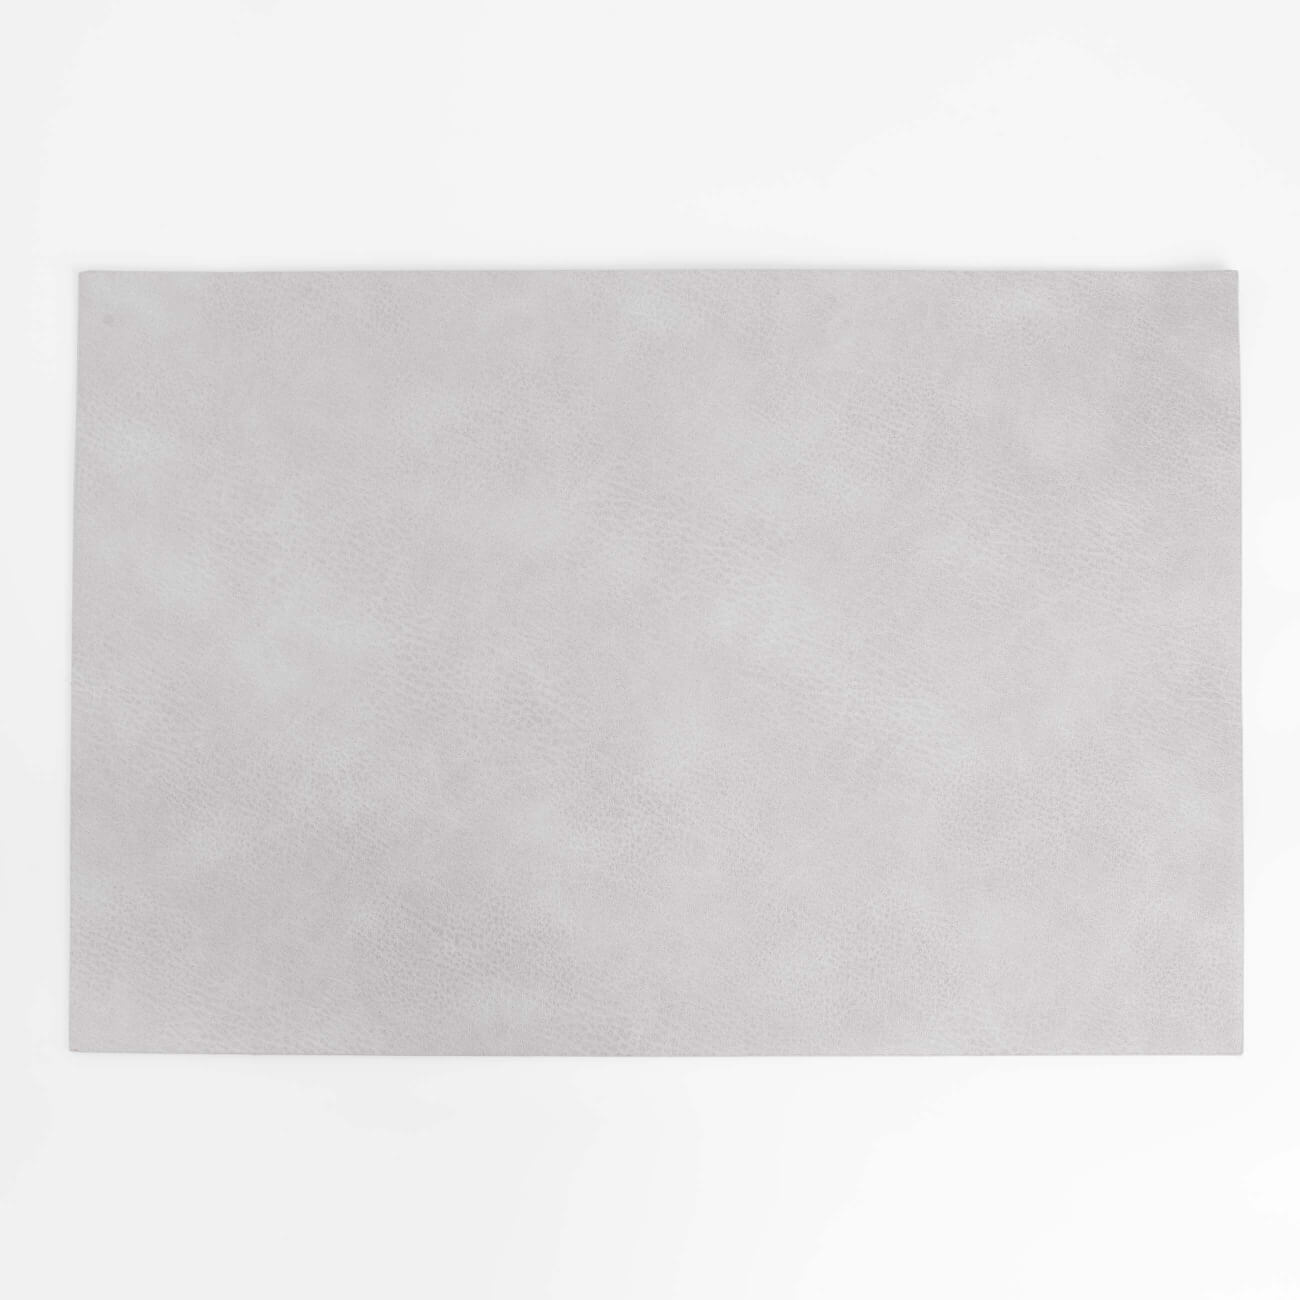 Салфетка под приборы, 30х45 см, ПВХ, прямоугольная, серая, Rock салфетка под приборы 33х46 см полиуретан прямоугольная белая белка rock print